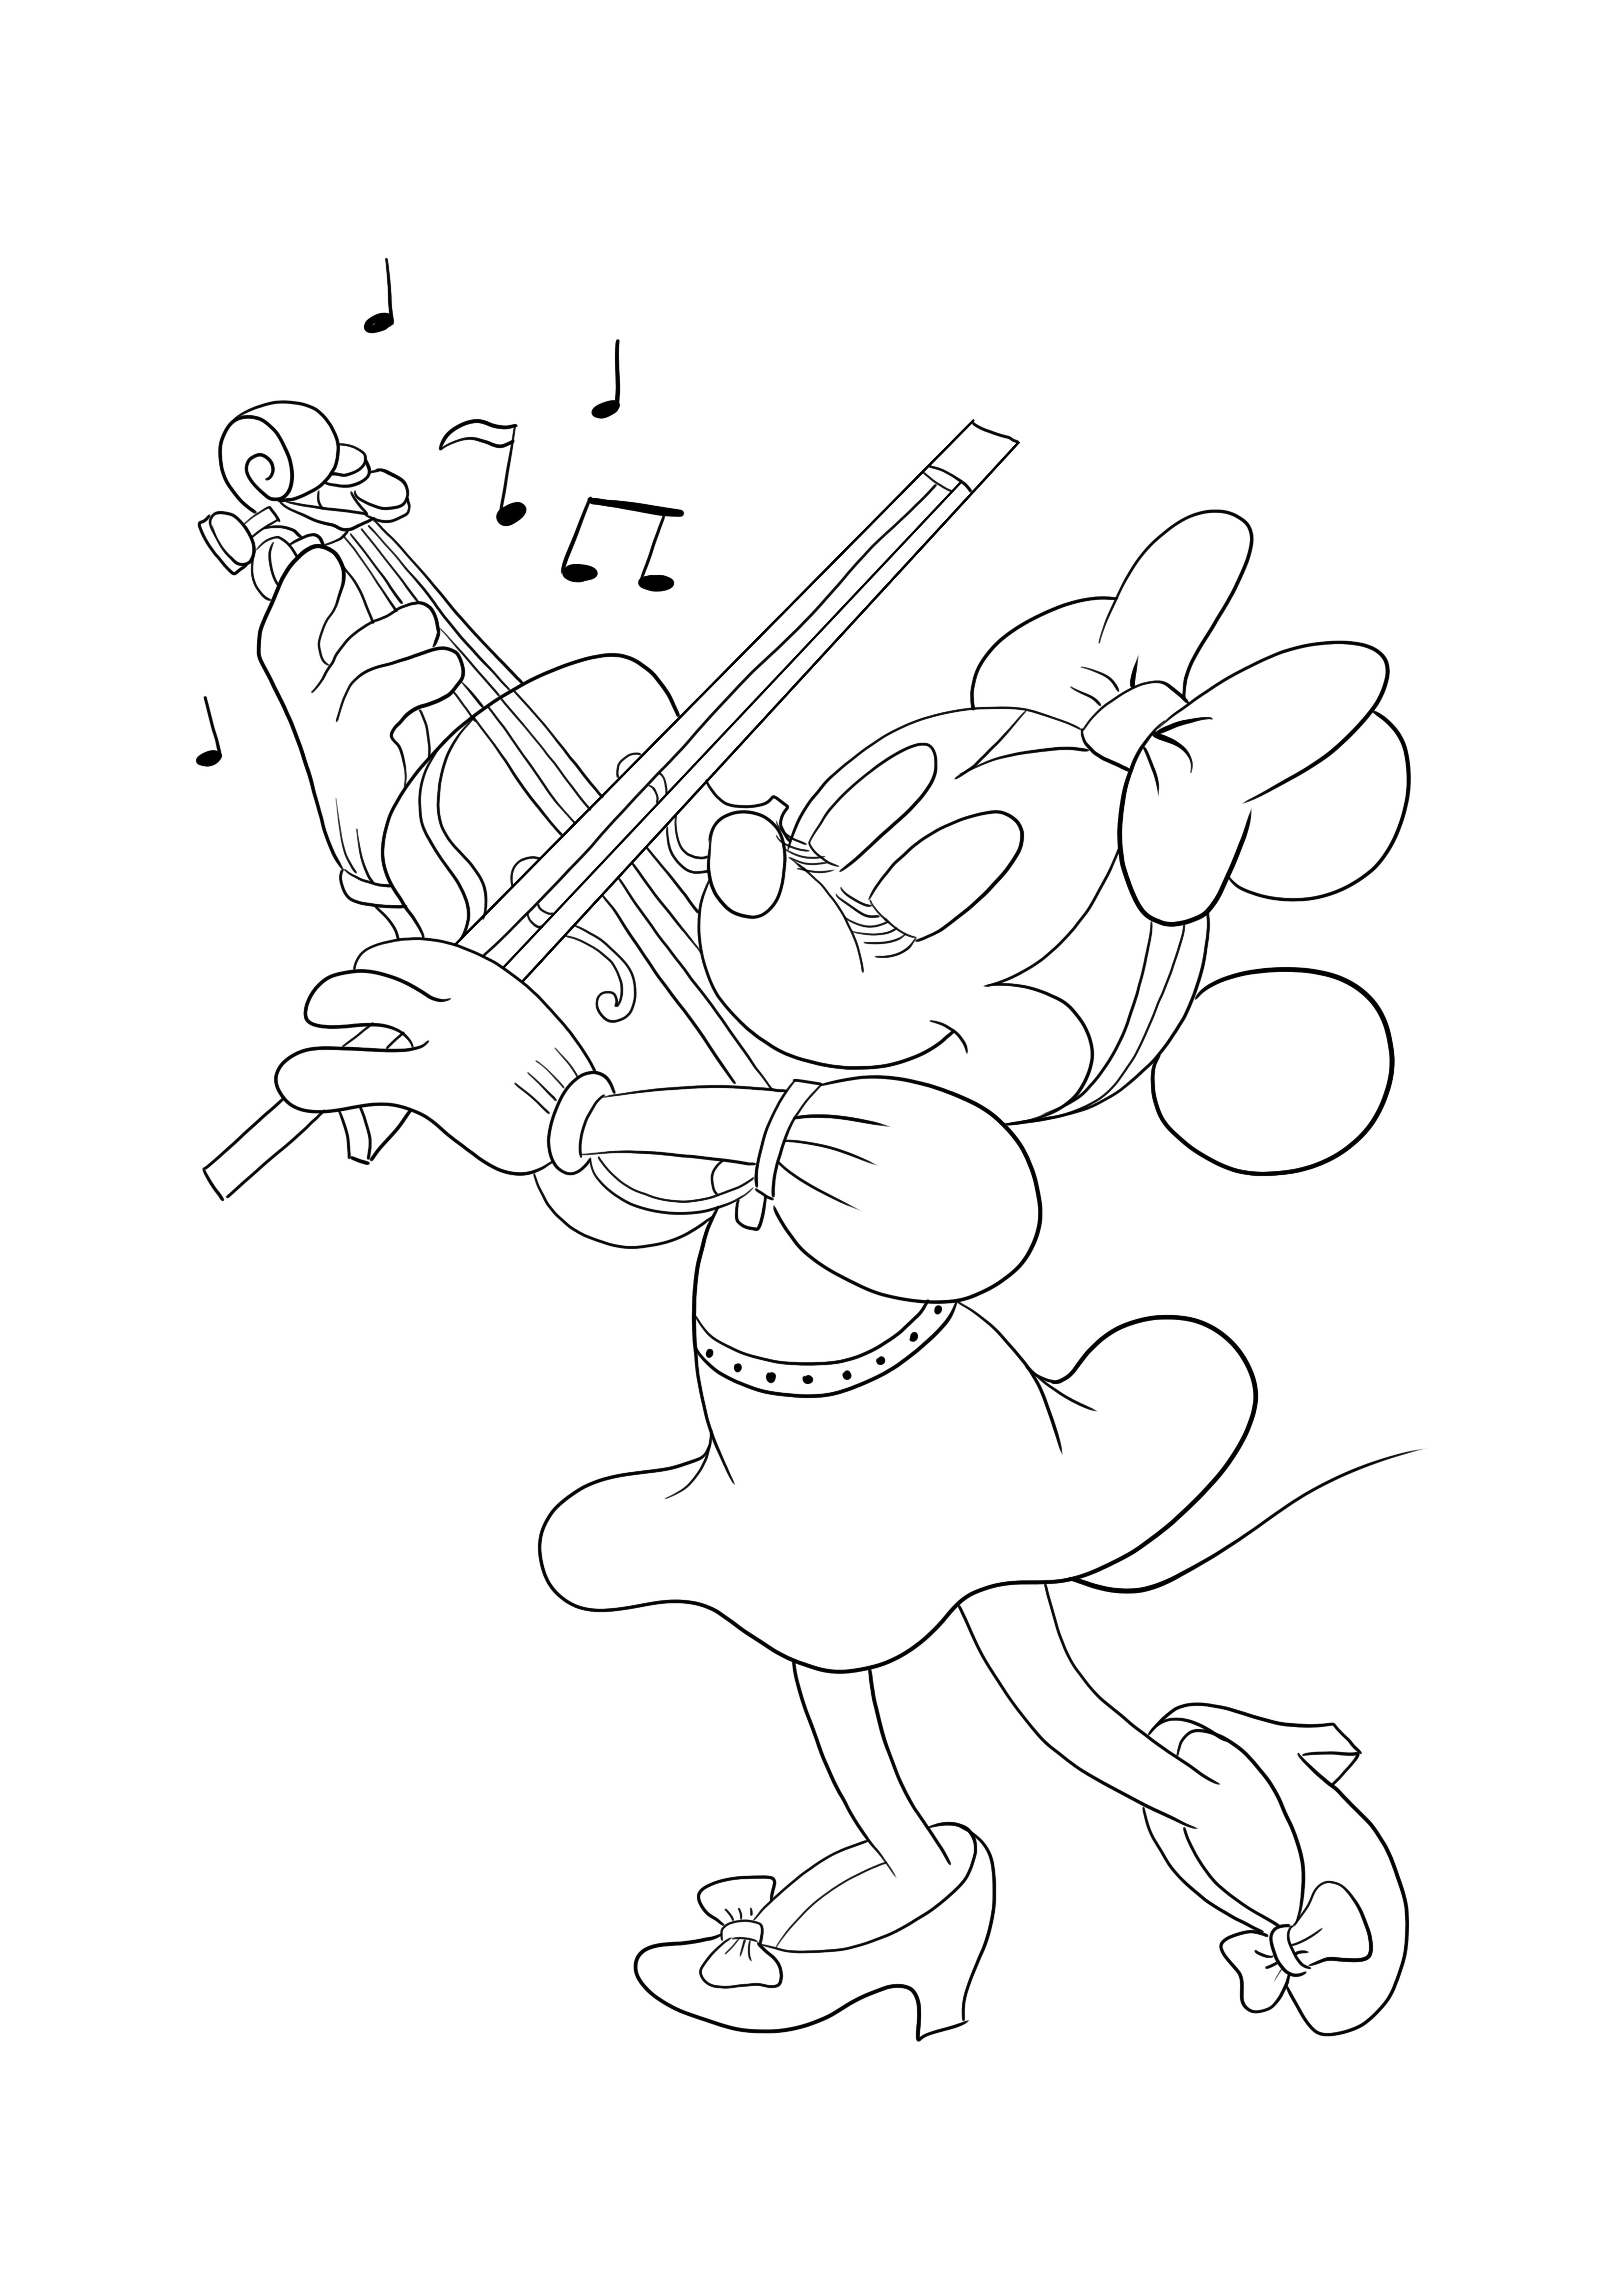 Myszka Minnie gra na skrzypcach — drukowanie i pobieranie za darmo